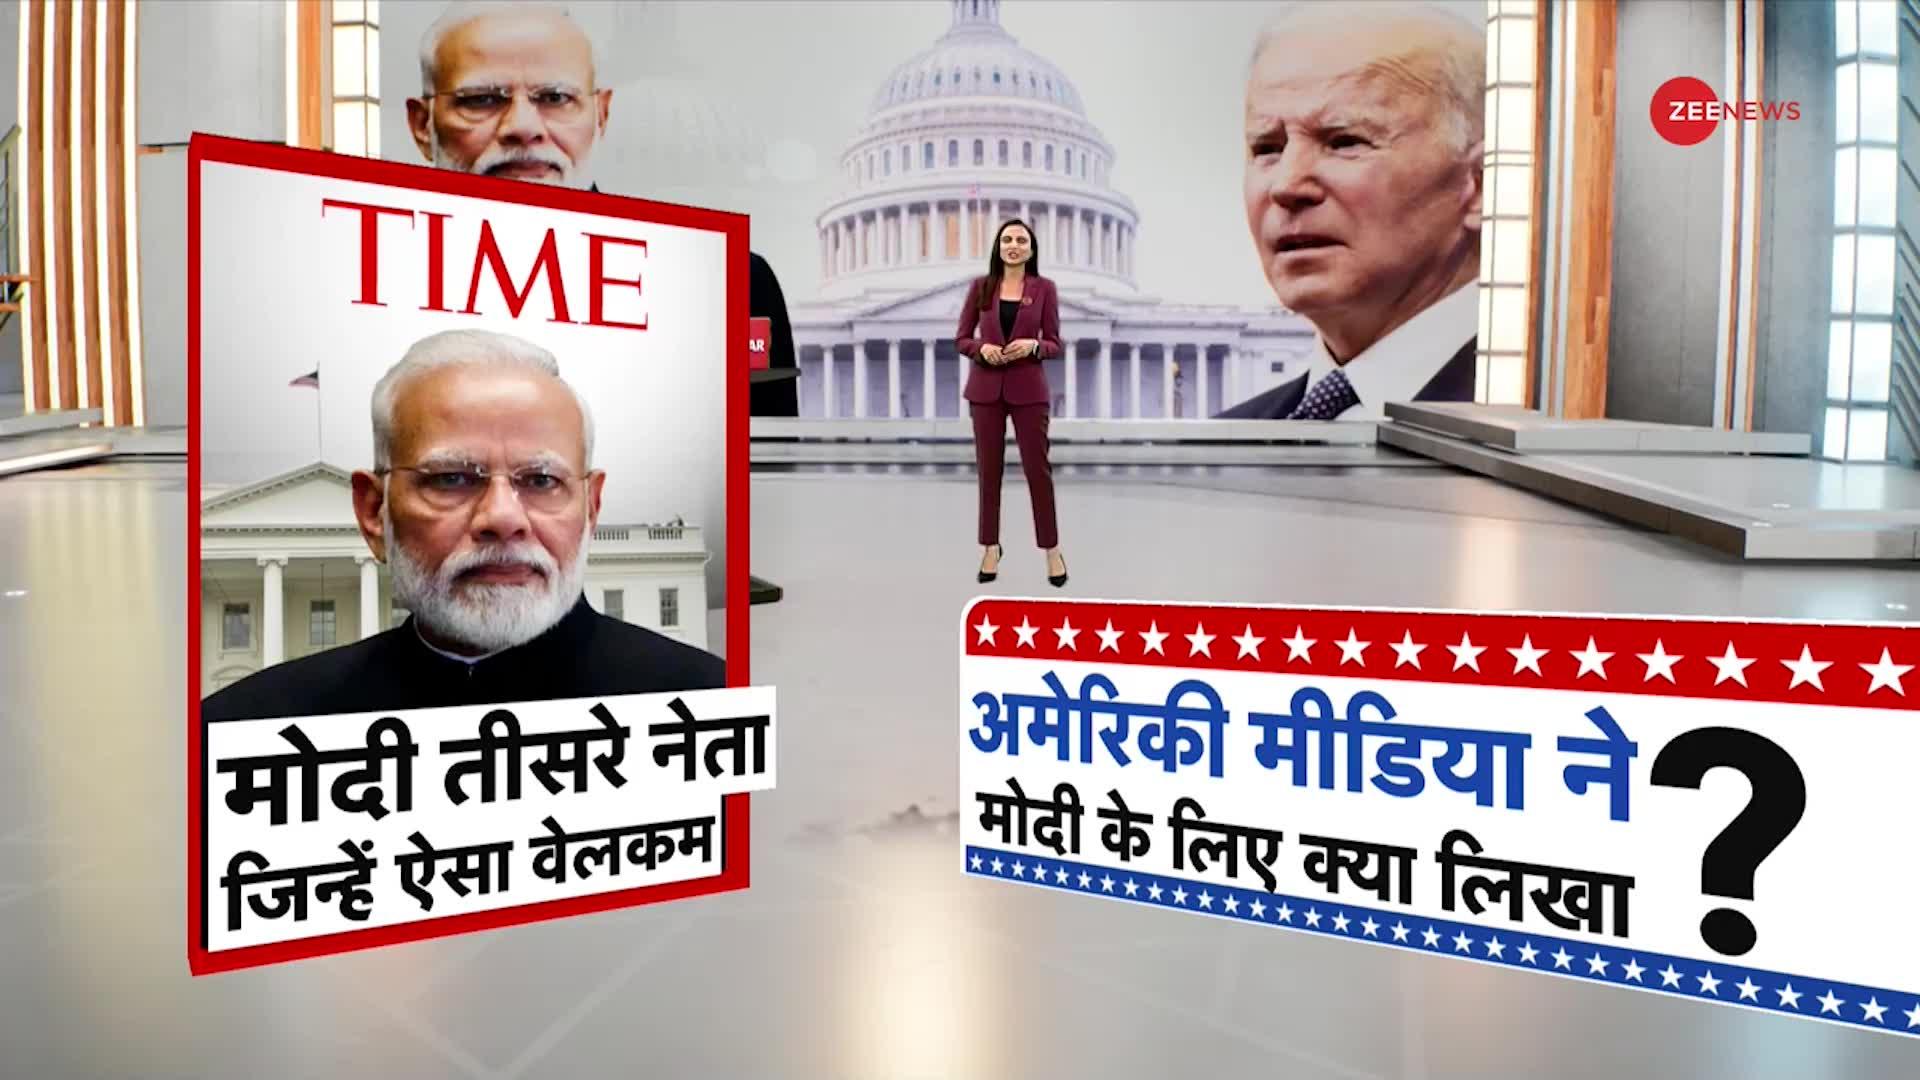 Deshhit: 'मोदी' की अमेरिकी यात्रा से 'चीन' परेशान...PM Modi का मुंहतोड़ जवाब